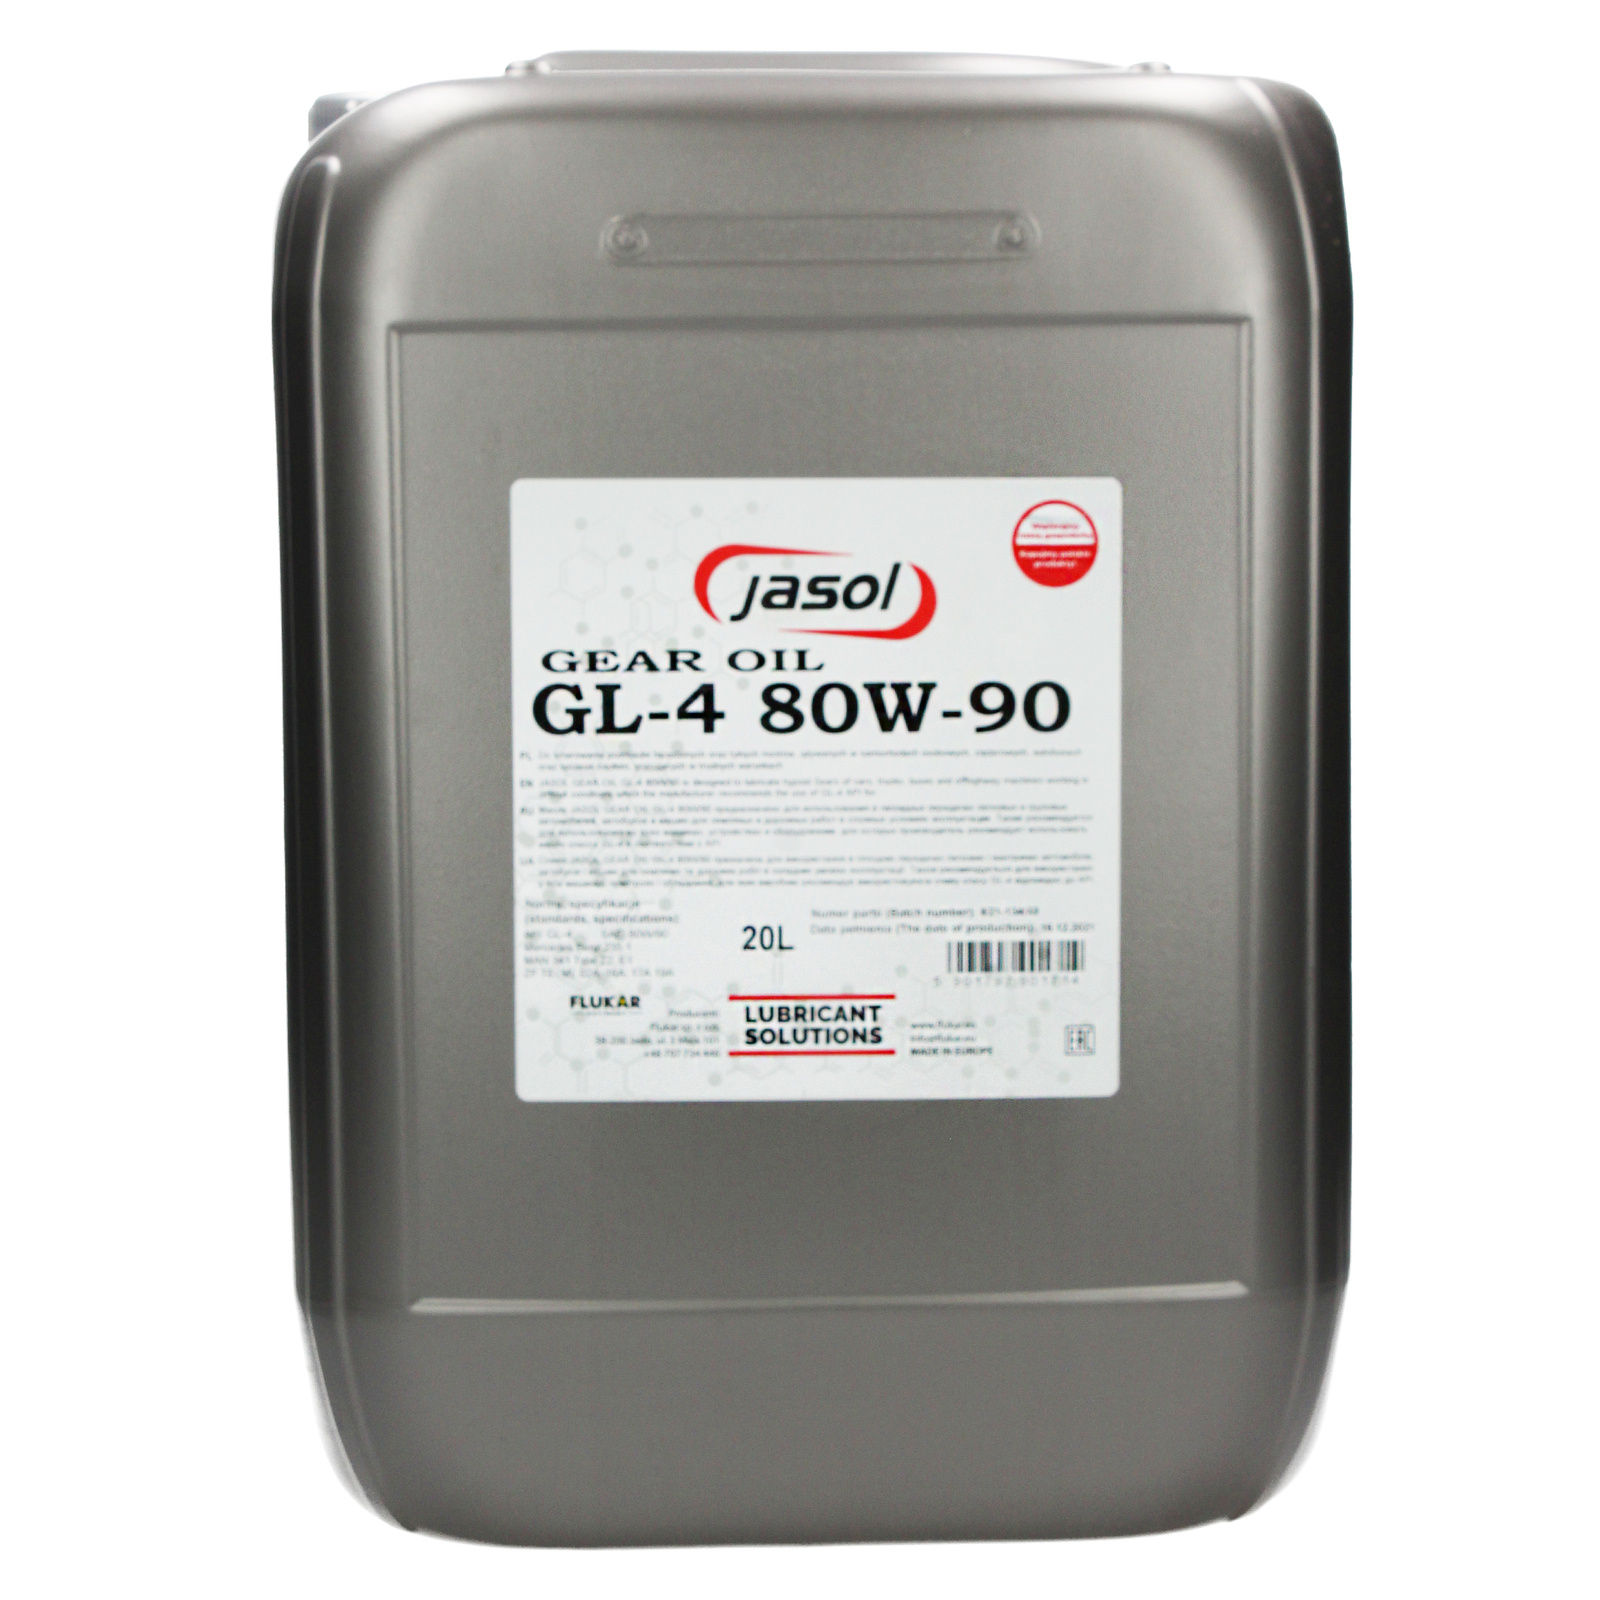 JASOL Gear Oil GL-4 80W-90 - 20L